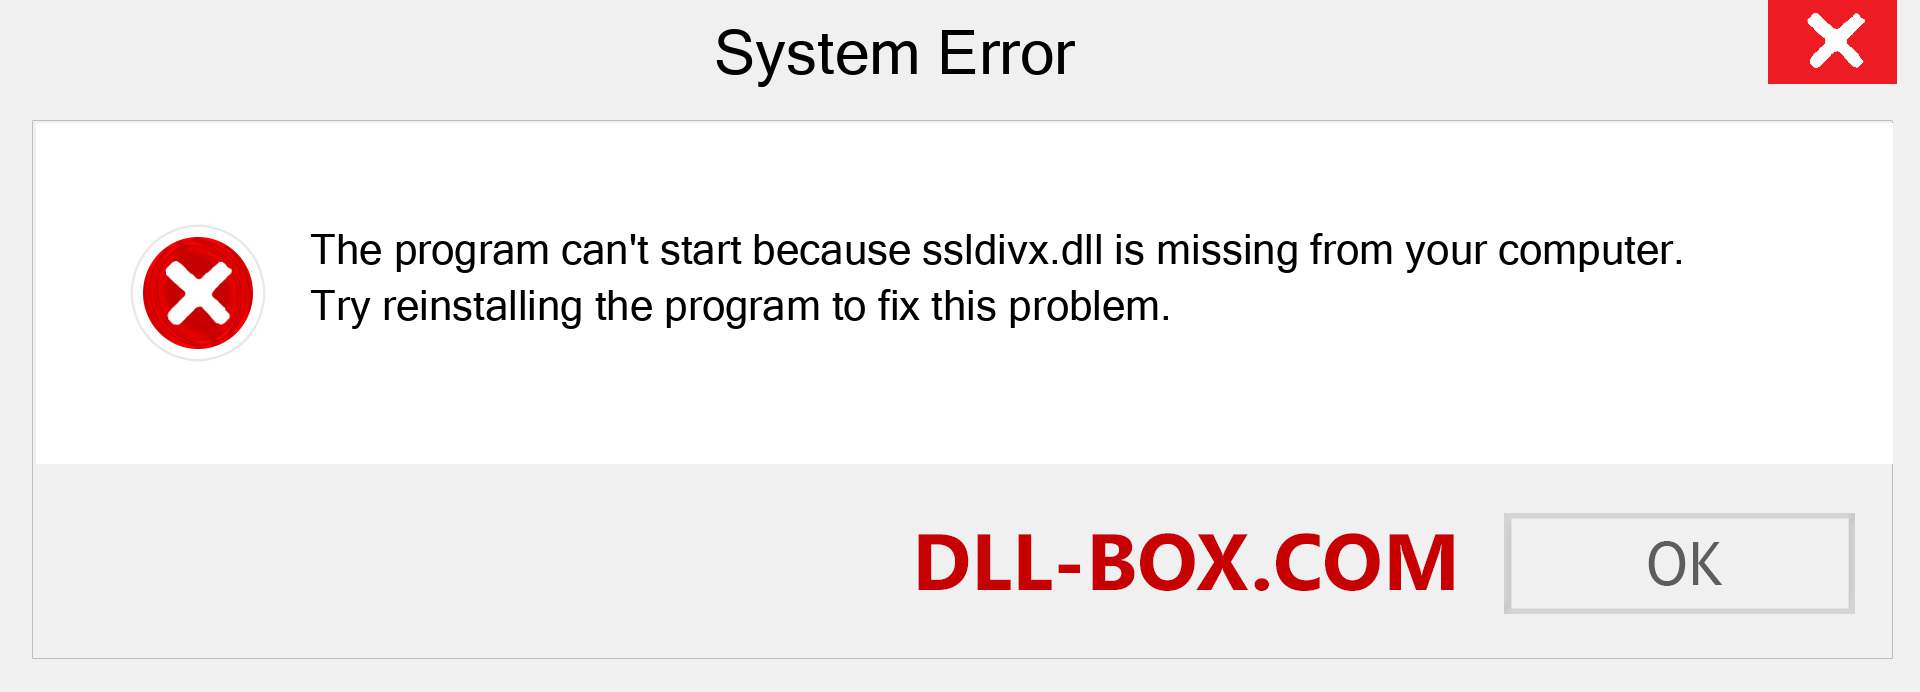  ssldivx.dll file is missing?. Download for Windows 7, 8, 10 - Fix  ssldivx dll Missing Error on Windows, photos, images